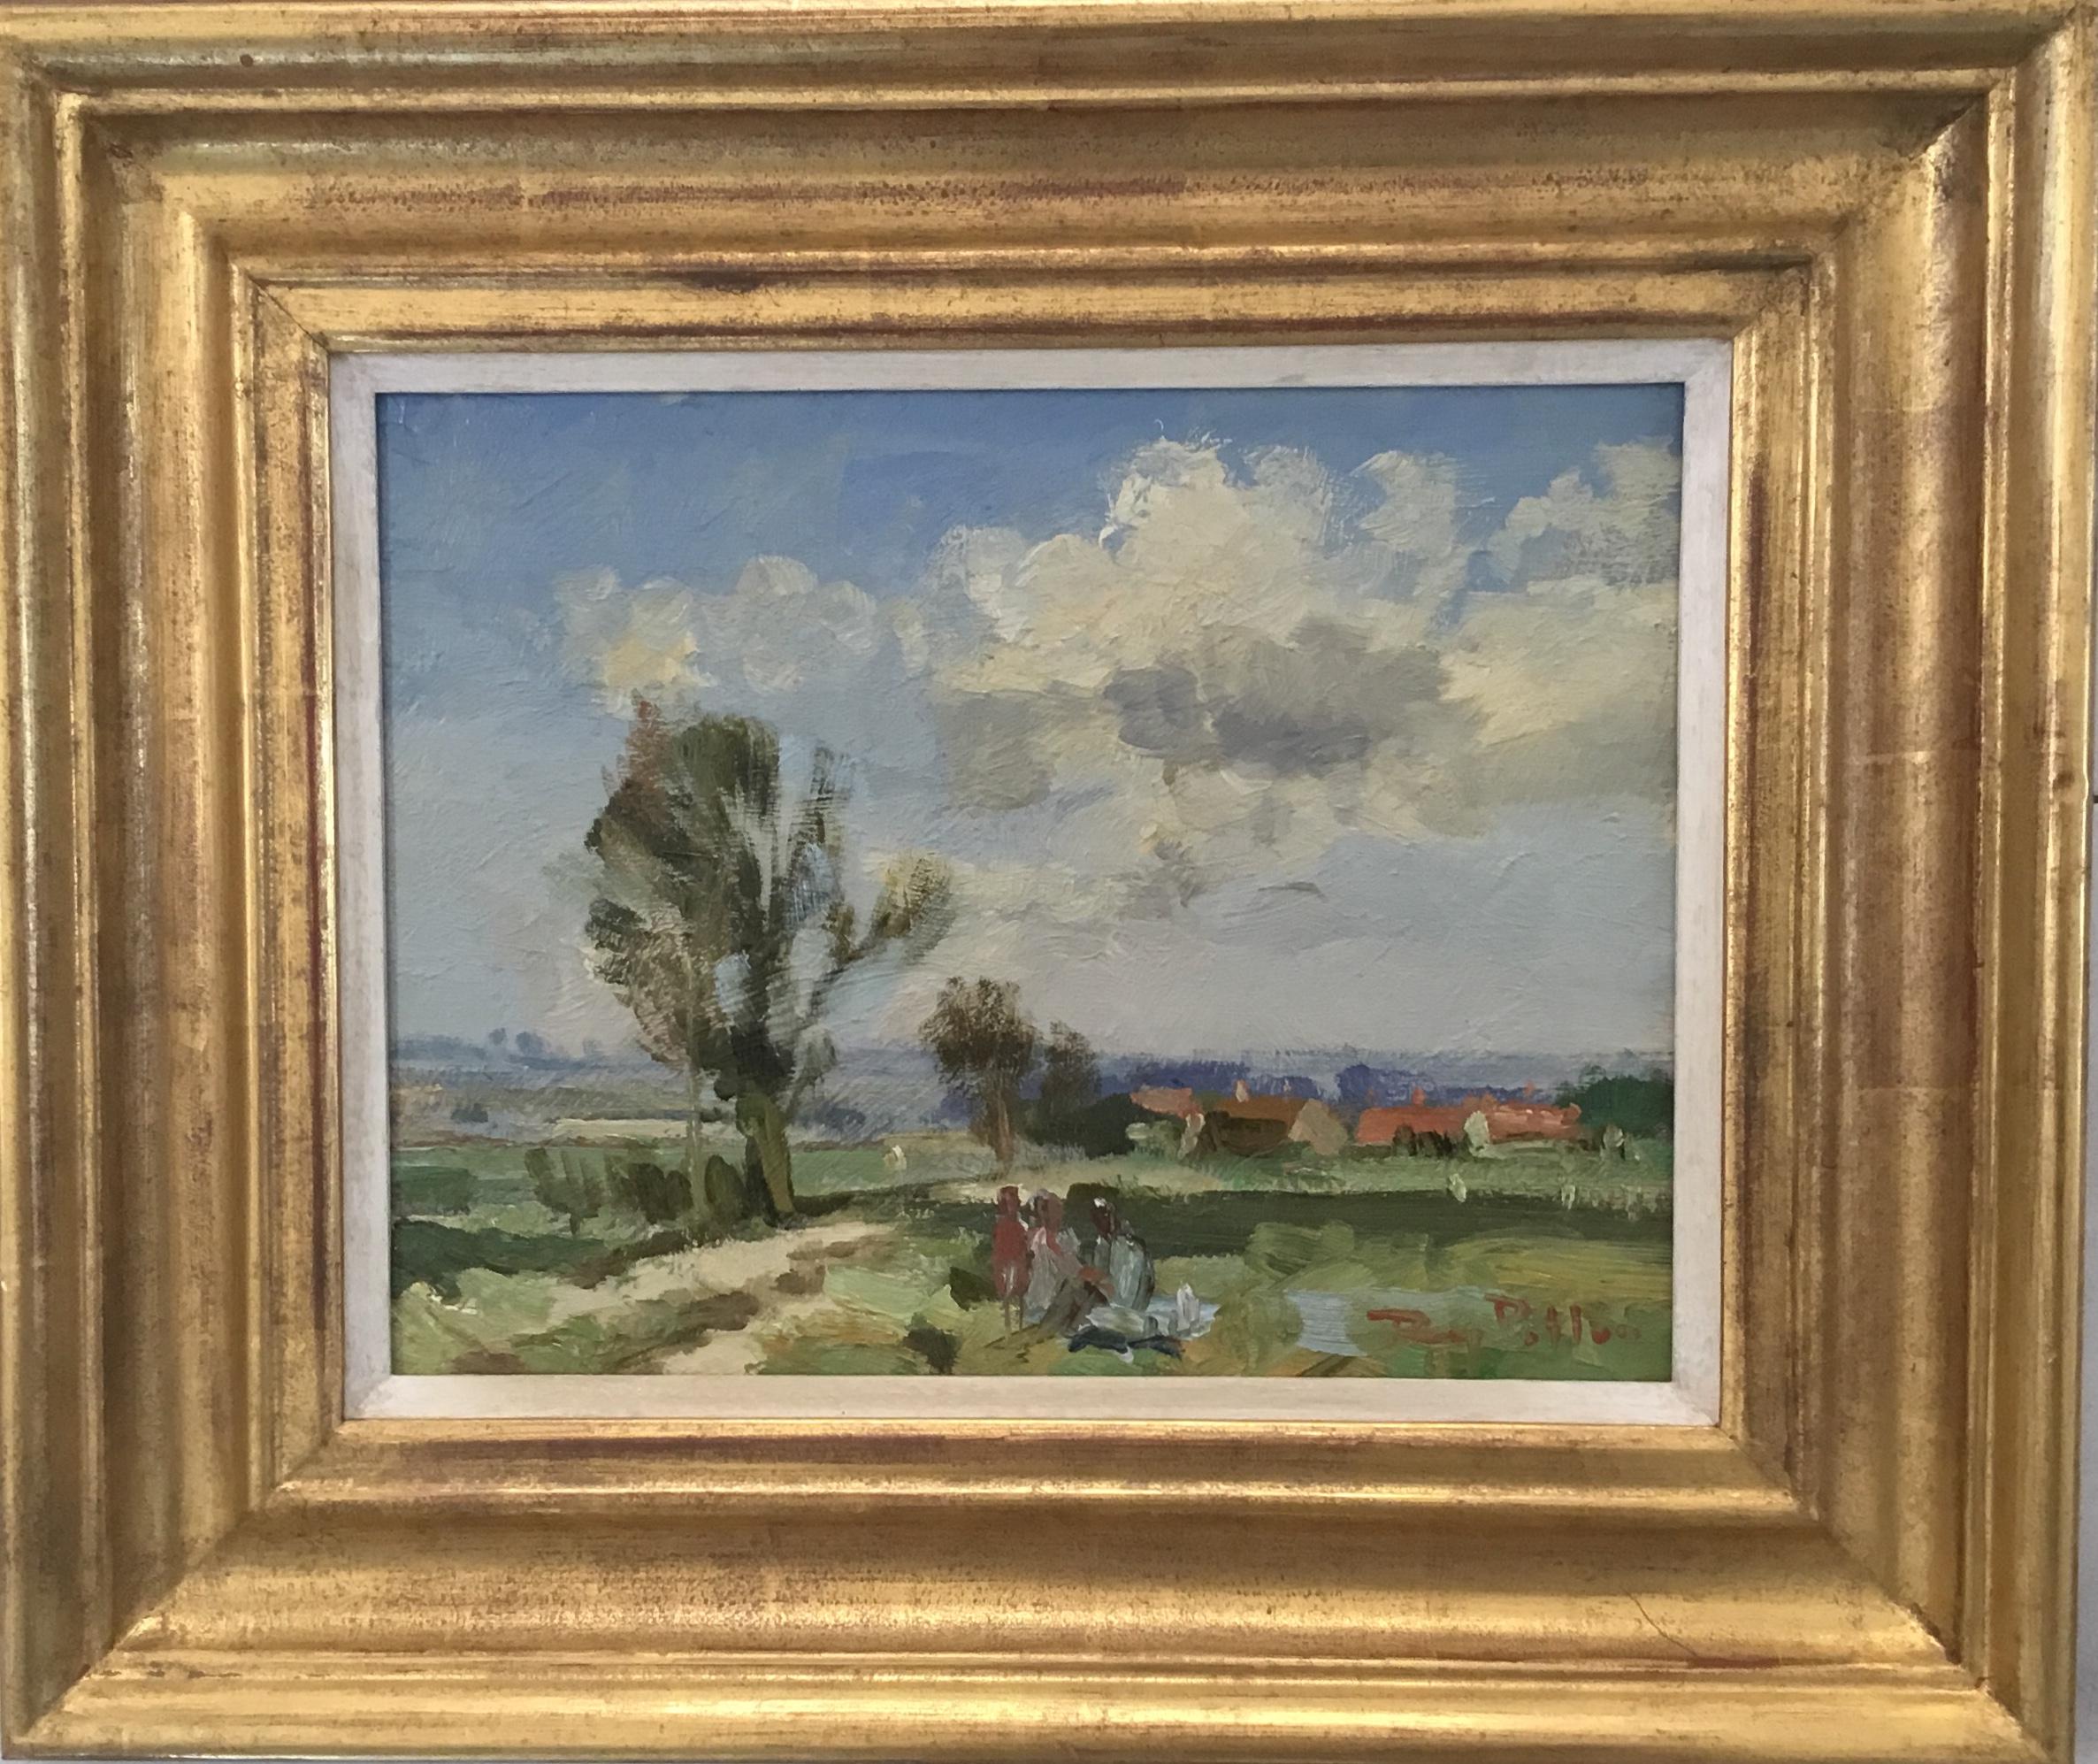 Roy Petley est un peintre de plein air britannique contemporain connu pour ses représentations impressionnistes de scènes côtières britanniques. Sa peinture luxuriante est souvent comparée aux œuvres de John Constable et de John Singer Sargent.